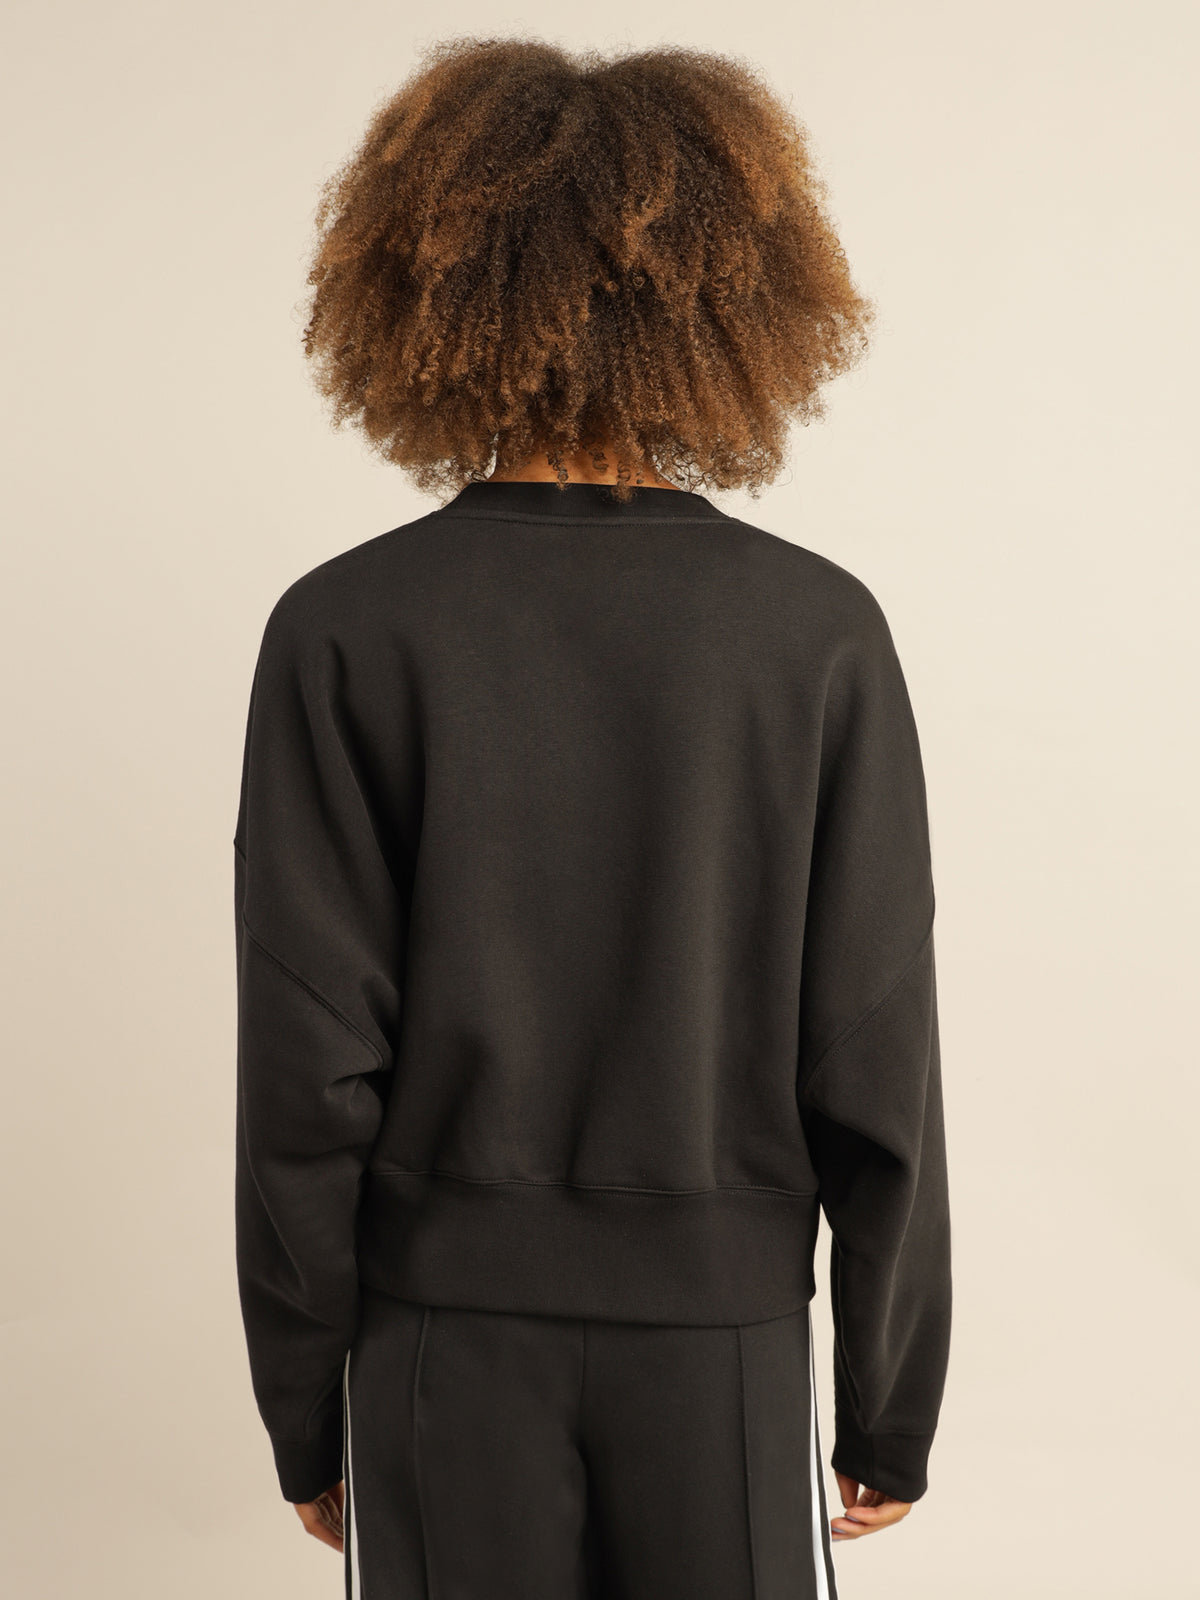 Adicolor Essentials Fleece Sweatshirt in Black